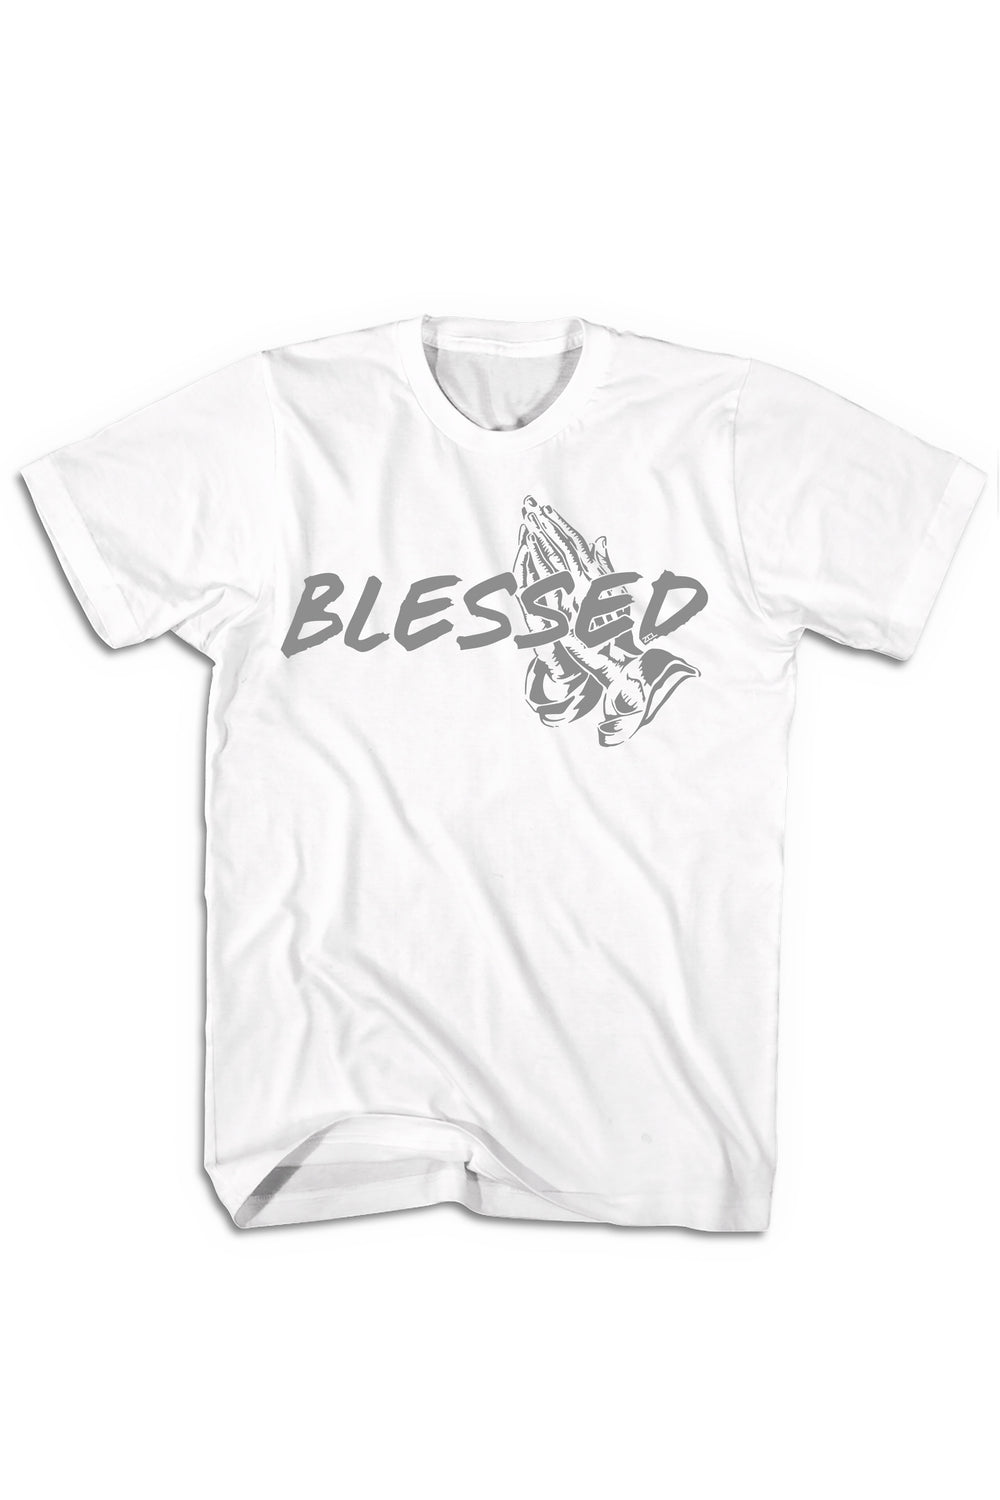 Blessed Tee (Grey Logo) - Zamage